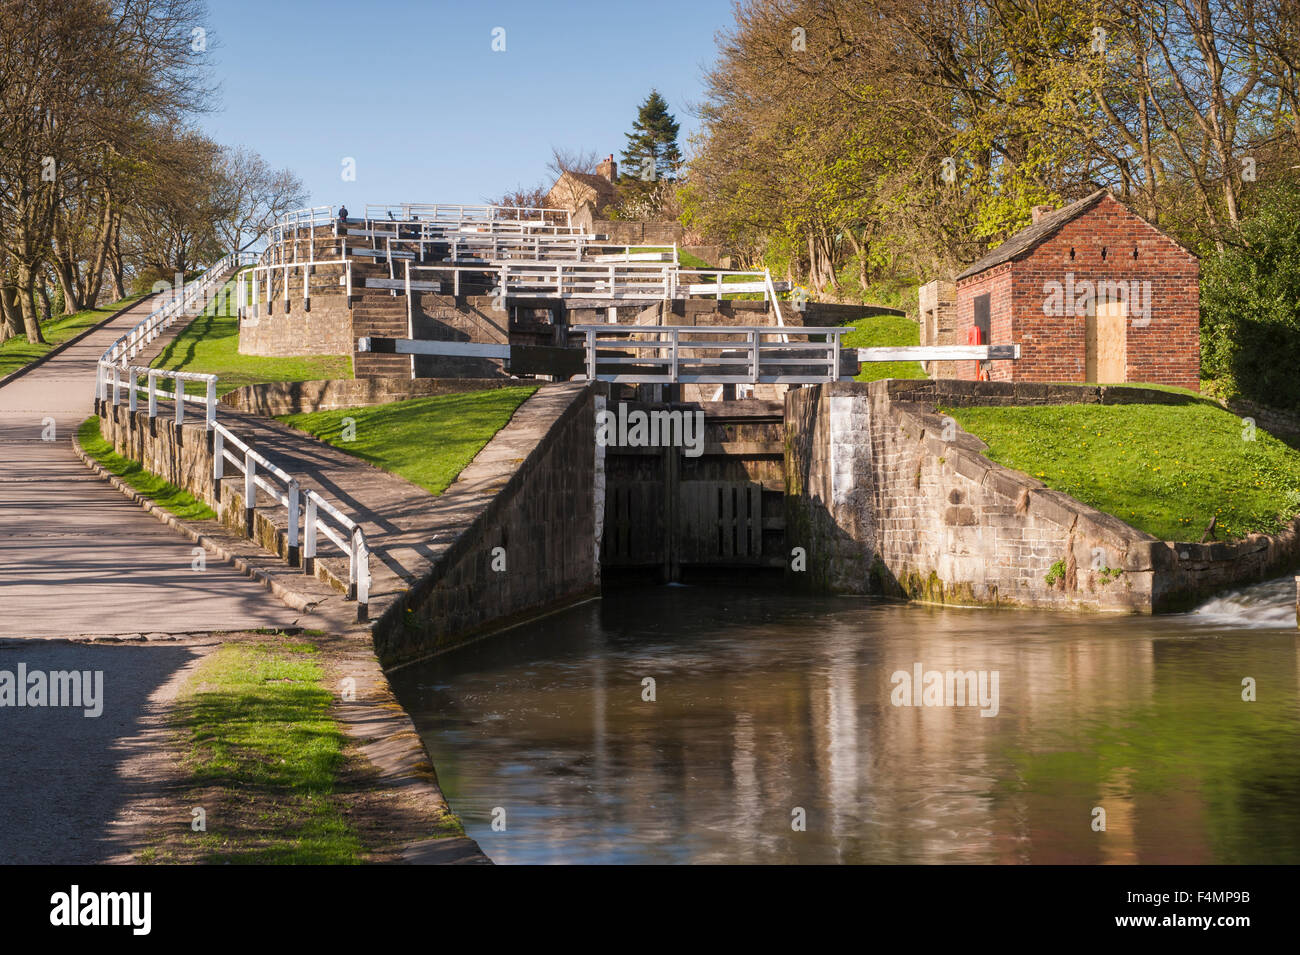 Malerischer Blick auf den sonnigen Frühling, Blick auf die Schleusentore - Bingley Five Rise Locks, Leeds und Liverpool Canal, West Yorkshire, England, Großbritannien. Stockfoto